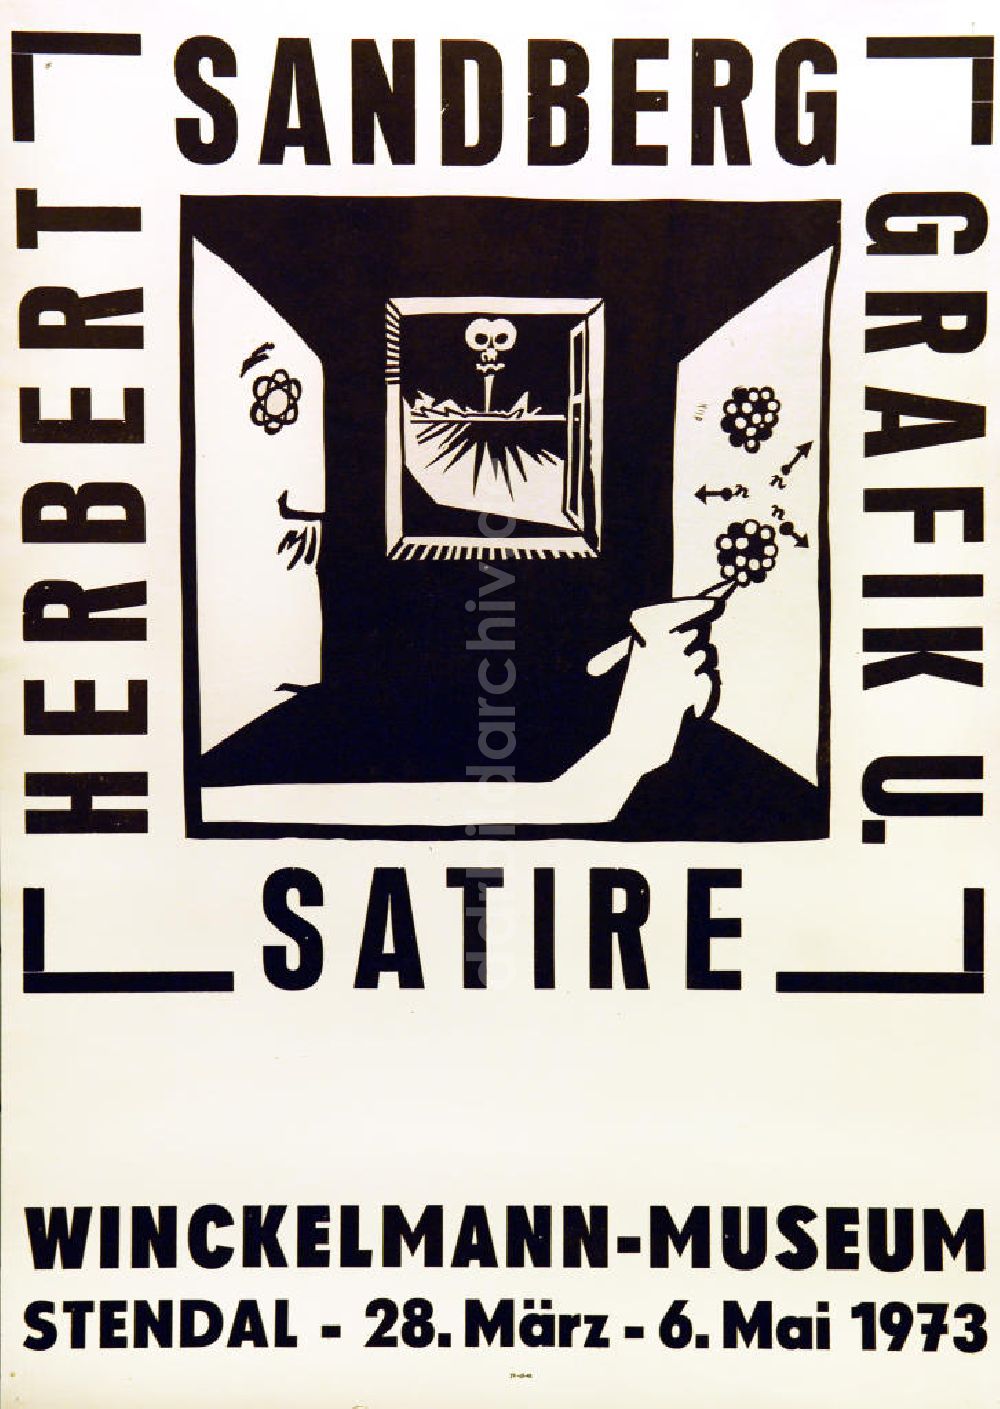 Berlin: Plakat von der Ausstellung Herbert Sandberg Grafik und Satire aus dem Jahr 1973